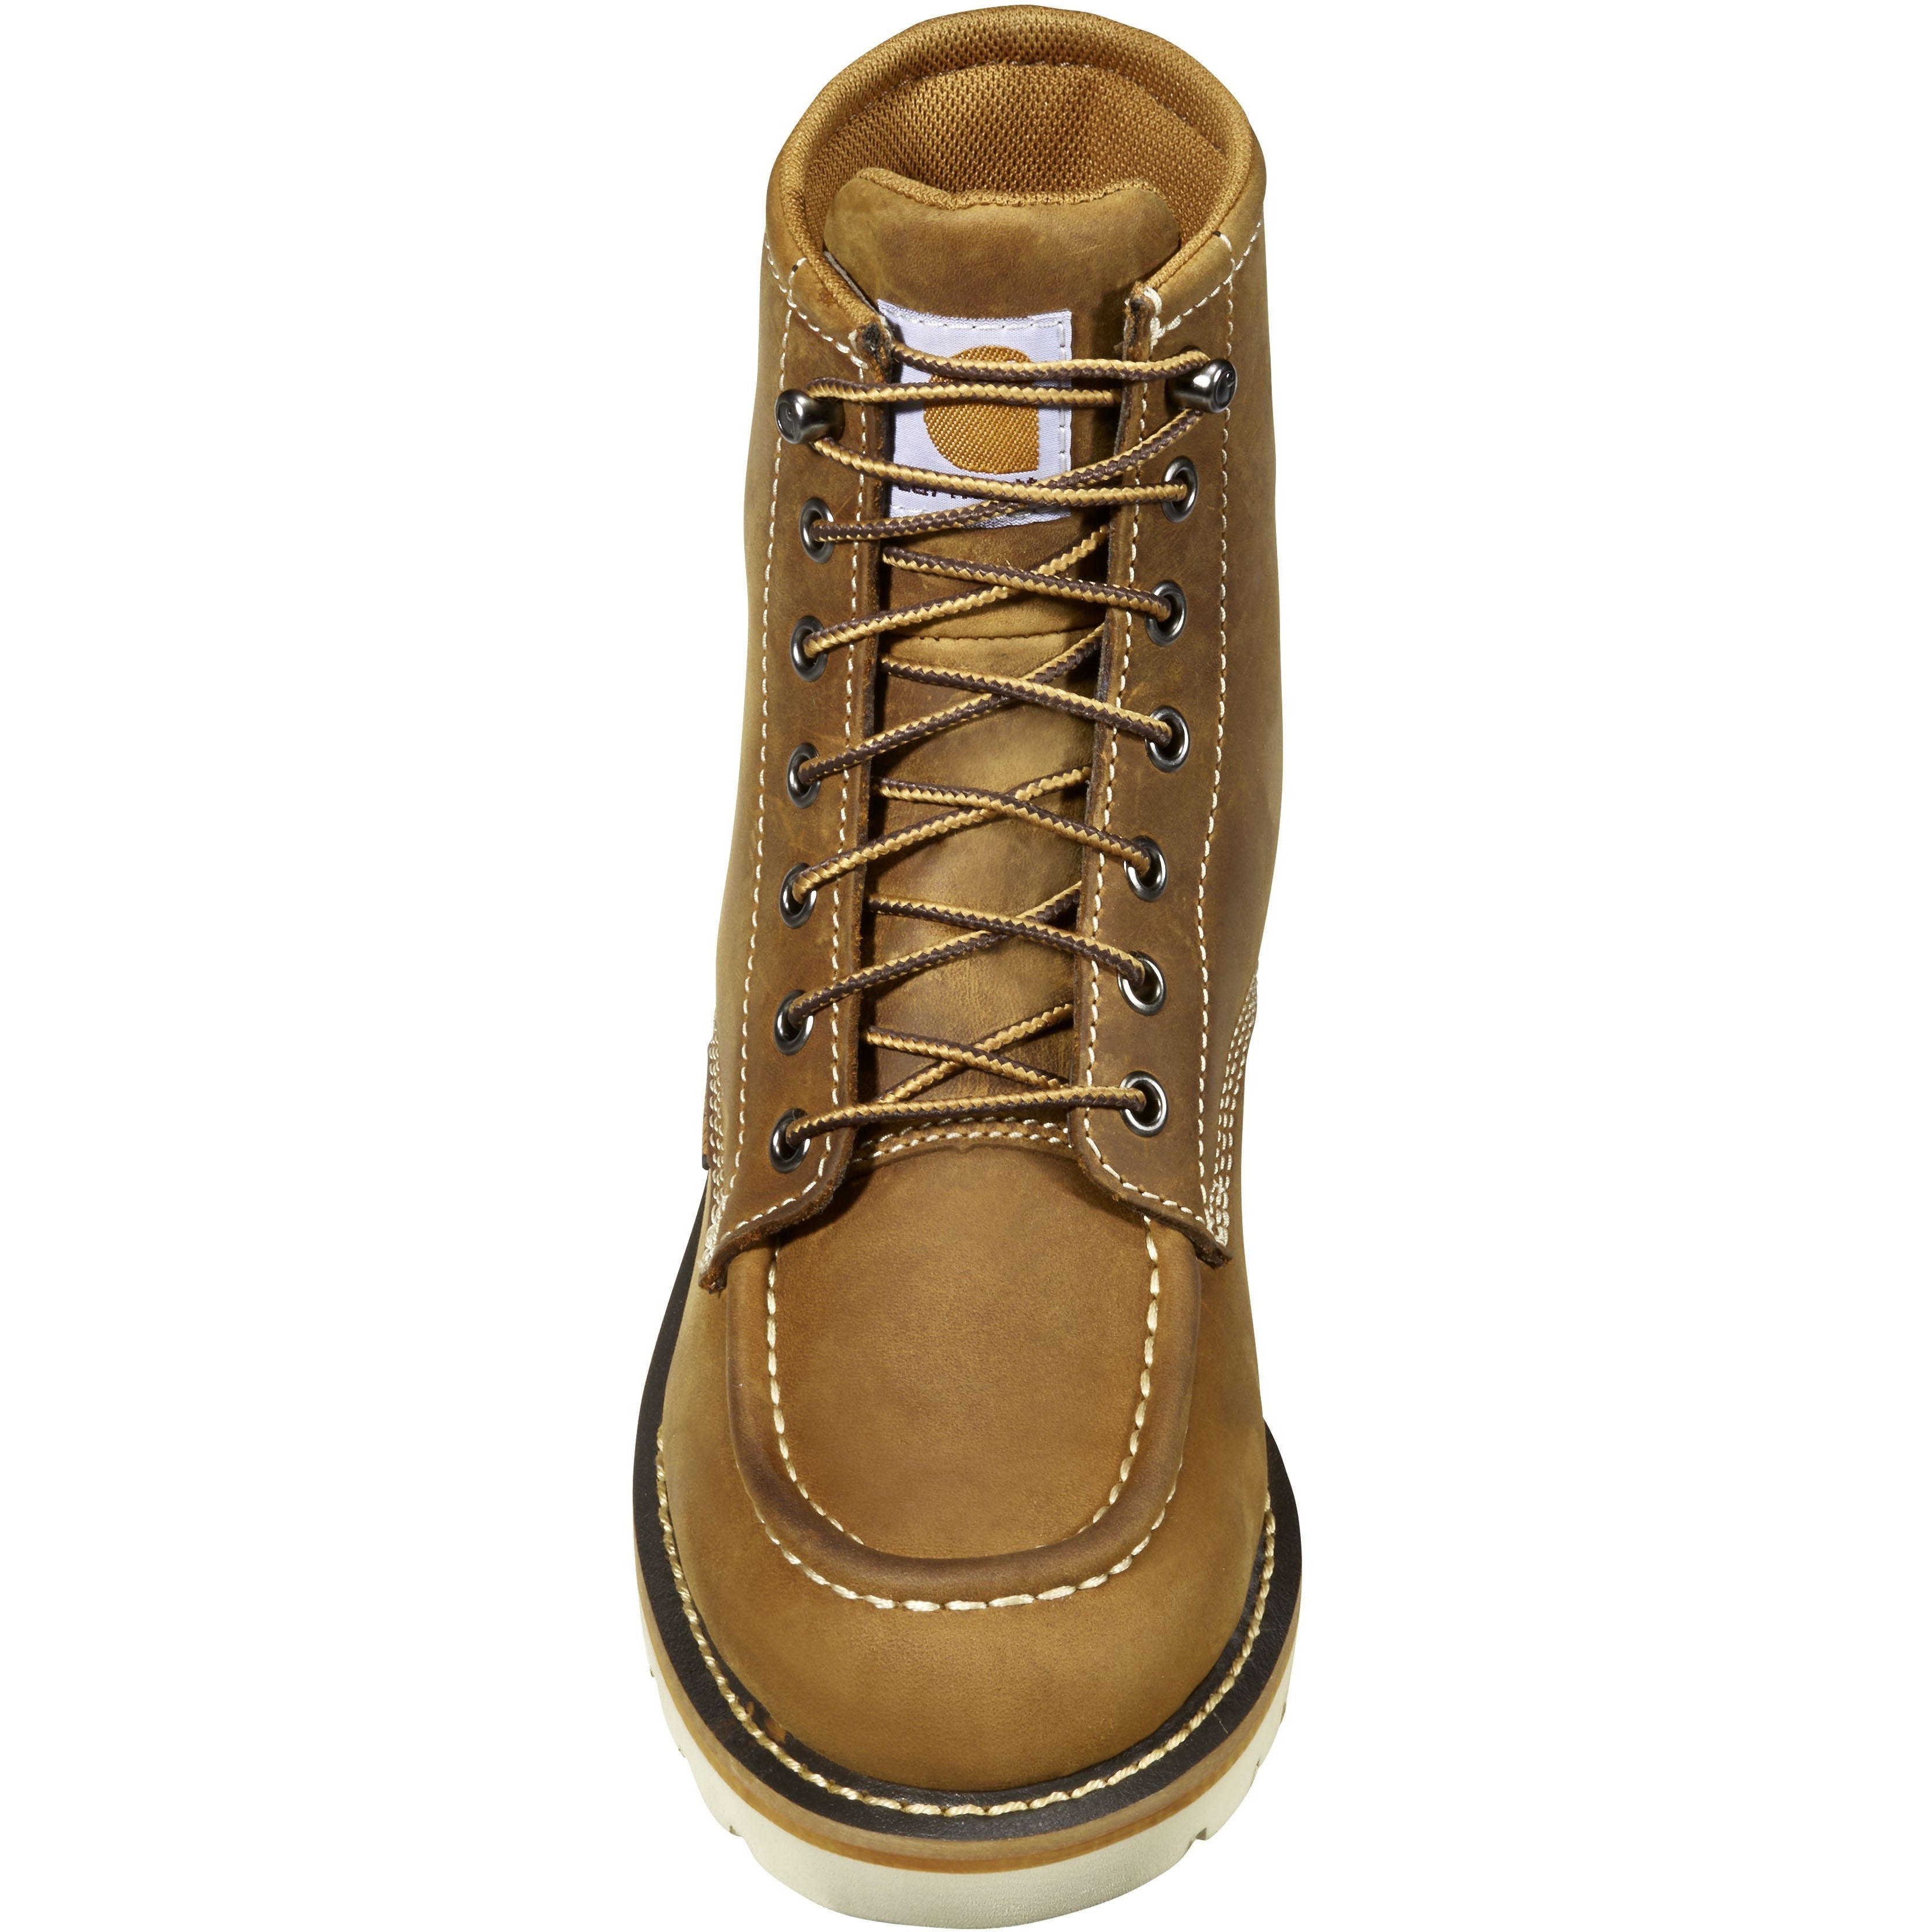 Carhartt Women's 6" Steel Toe WP Wedge Work Boot - Brown - FW6225-W  - Overlook Boots